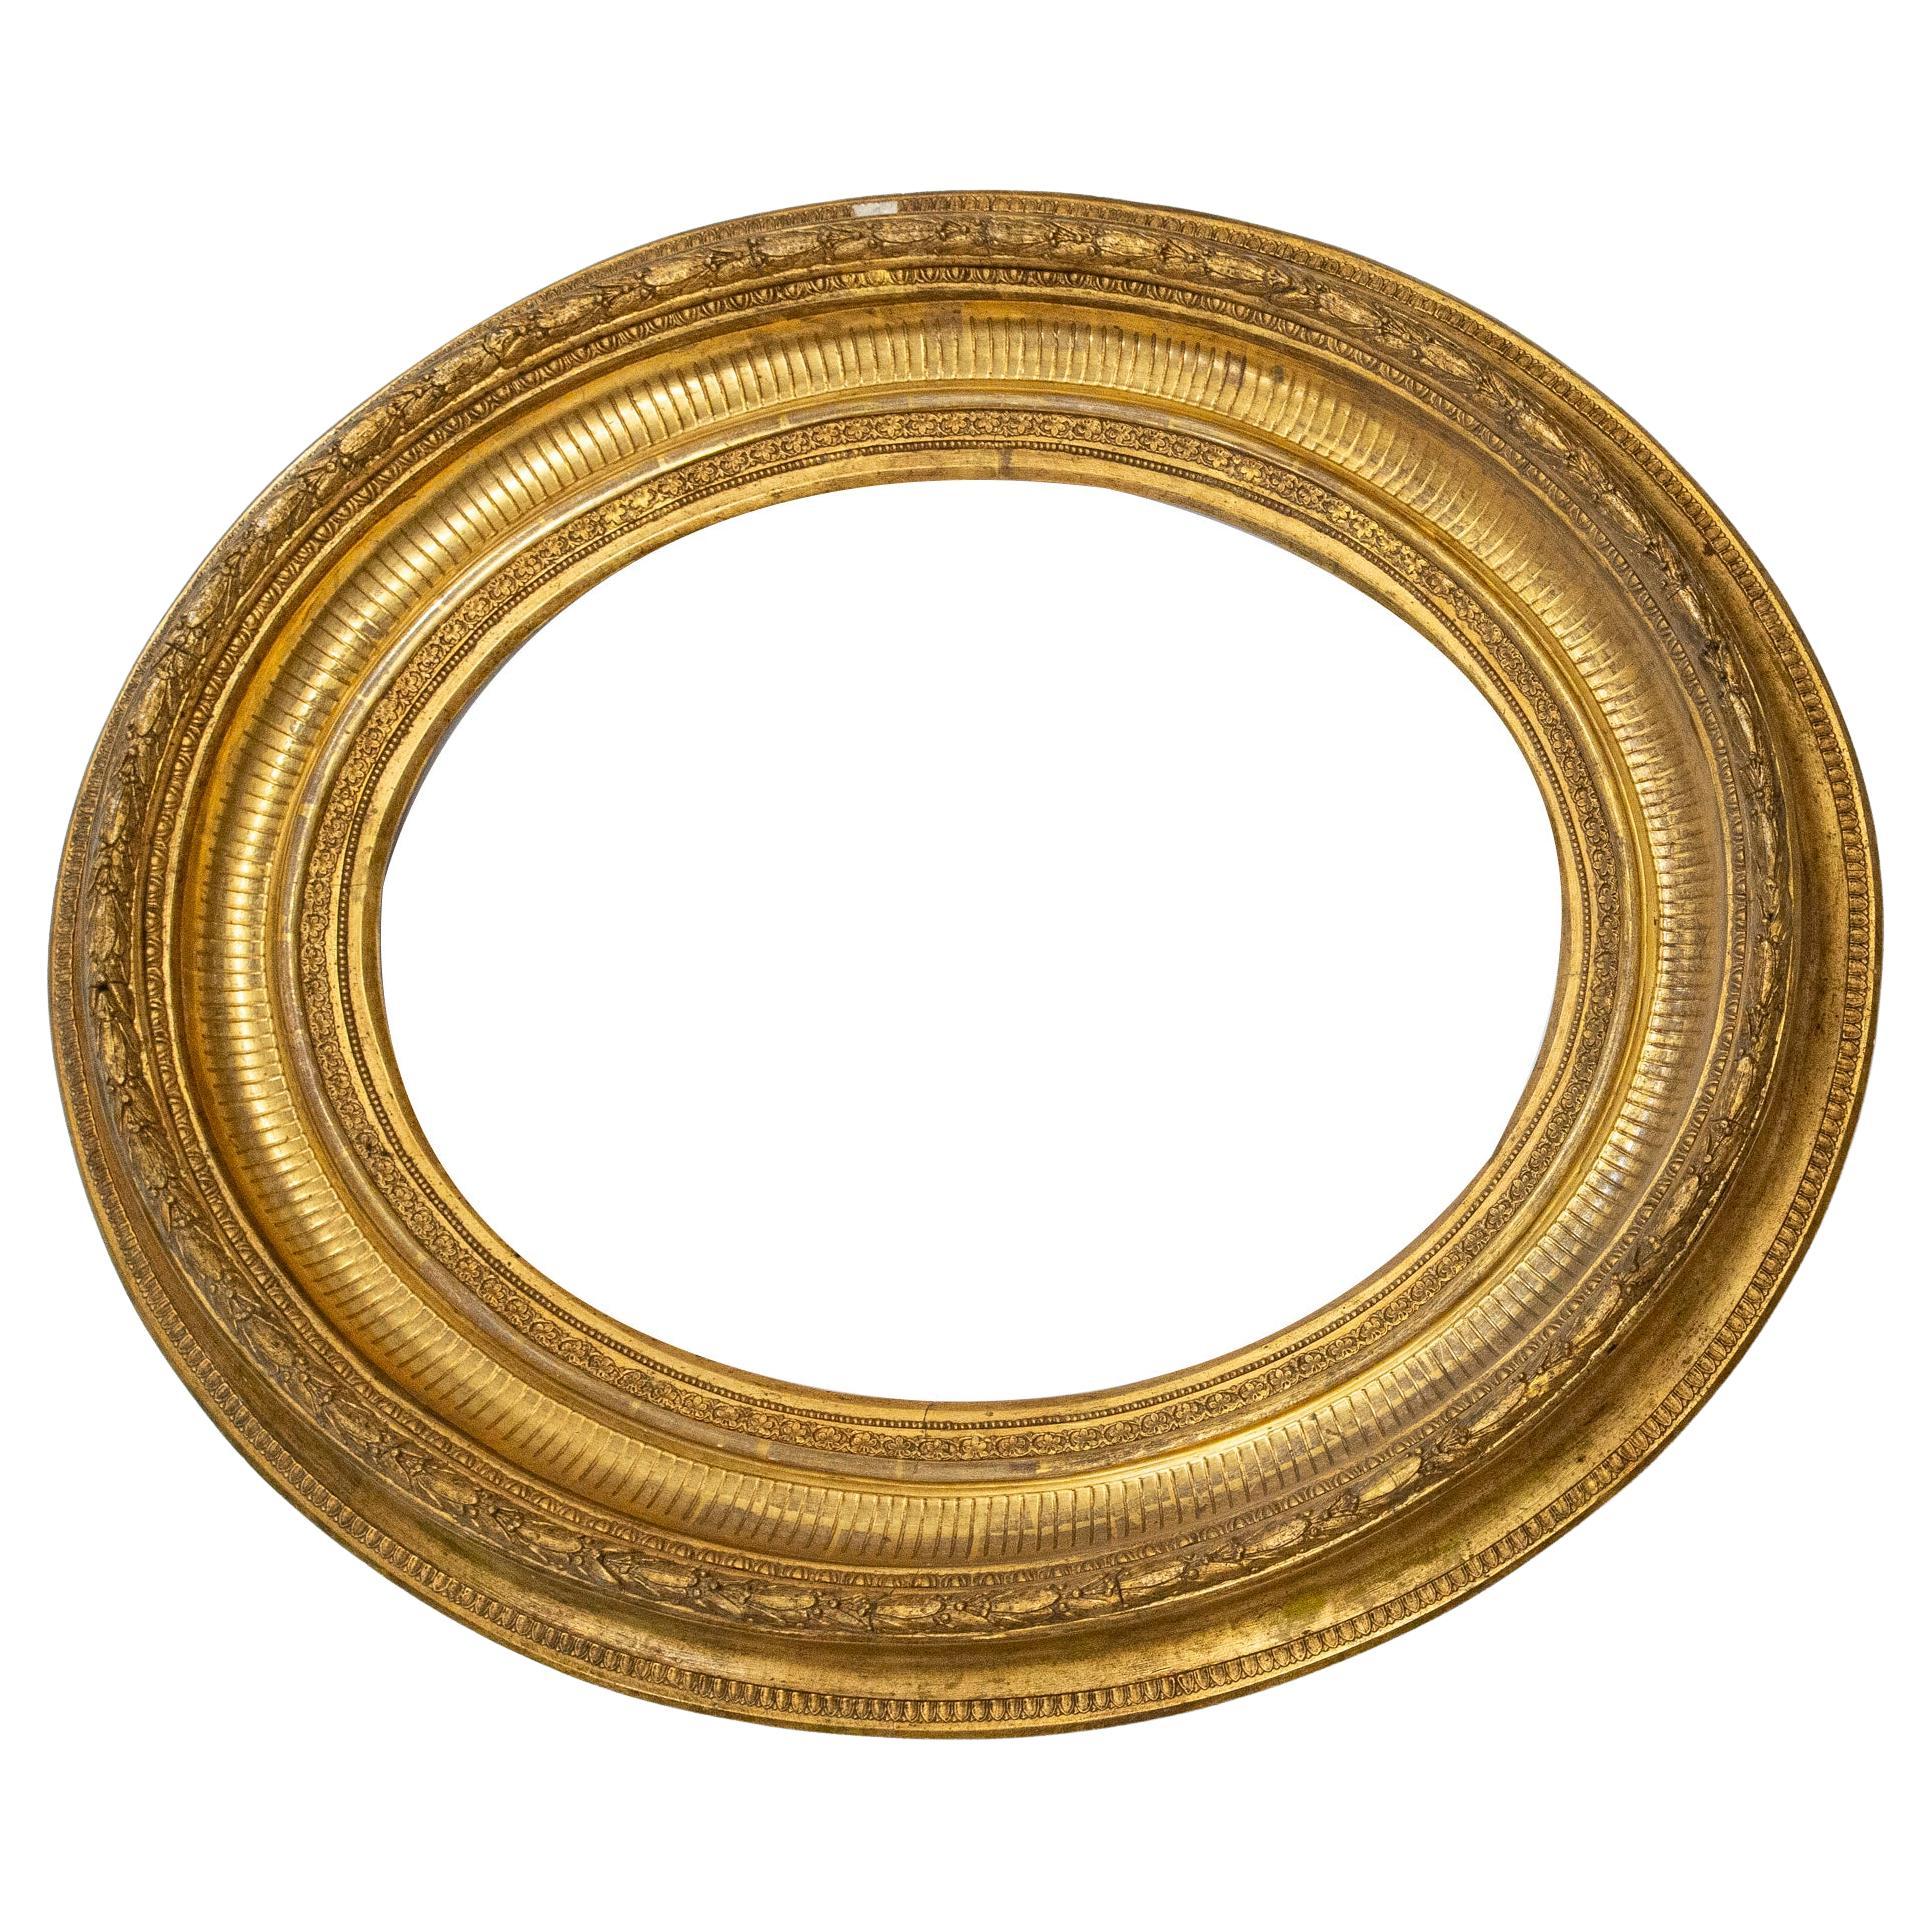 O/6480 - Grand cadre ovale doré, parfait pour un miroir : il est préférable de monter le miroir soi-même, en raison des problèmes de transport depuis l'Italie. Je peux toutefois le faire sur demande.
Elle est très importante et élégante, elle peut